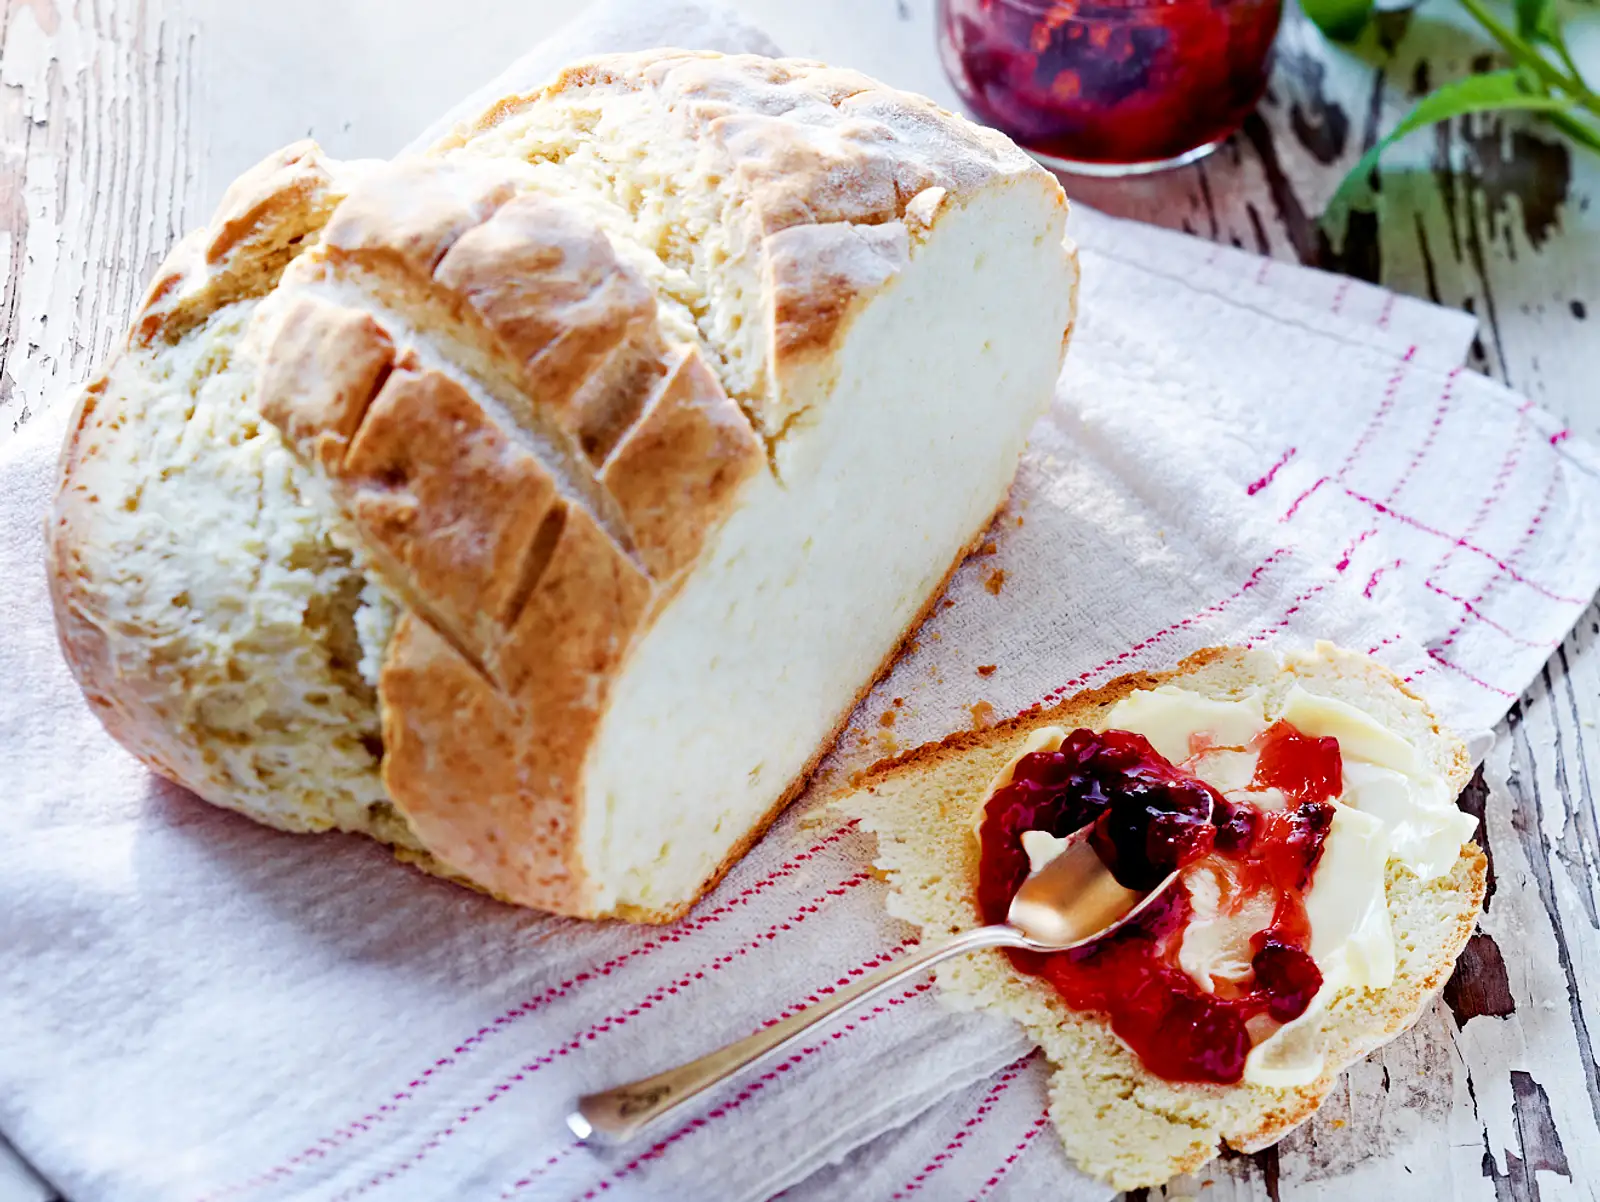 Brot backen: Blitzrezept ohne Hefe mit nur 5 Zutaten